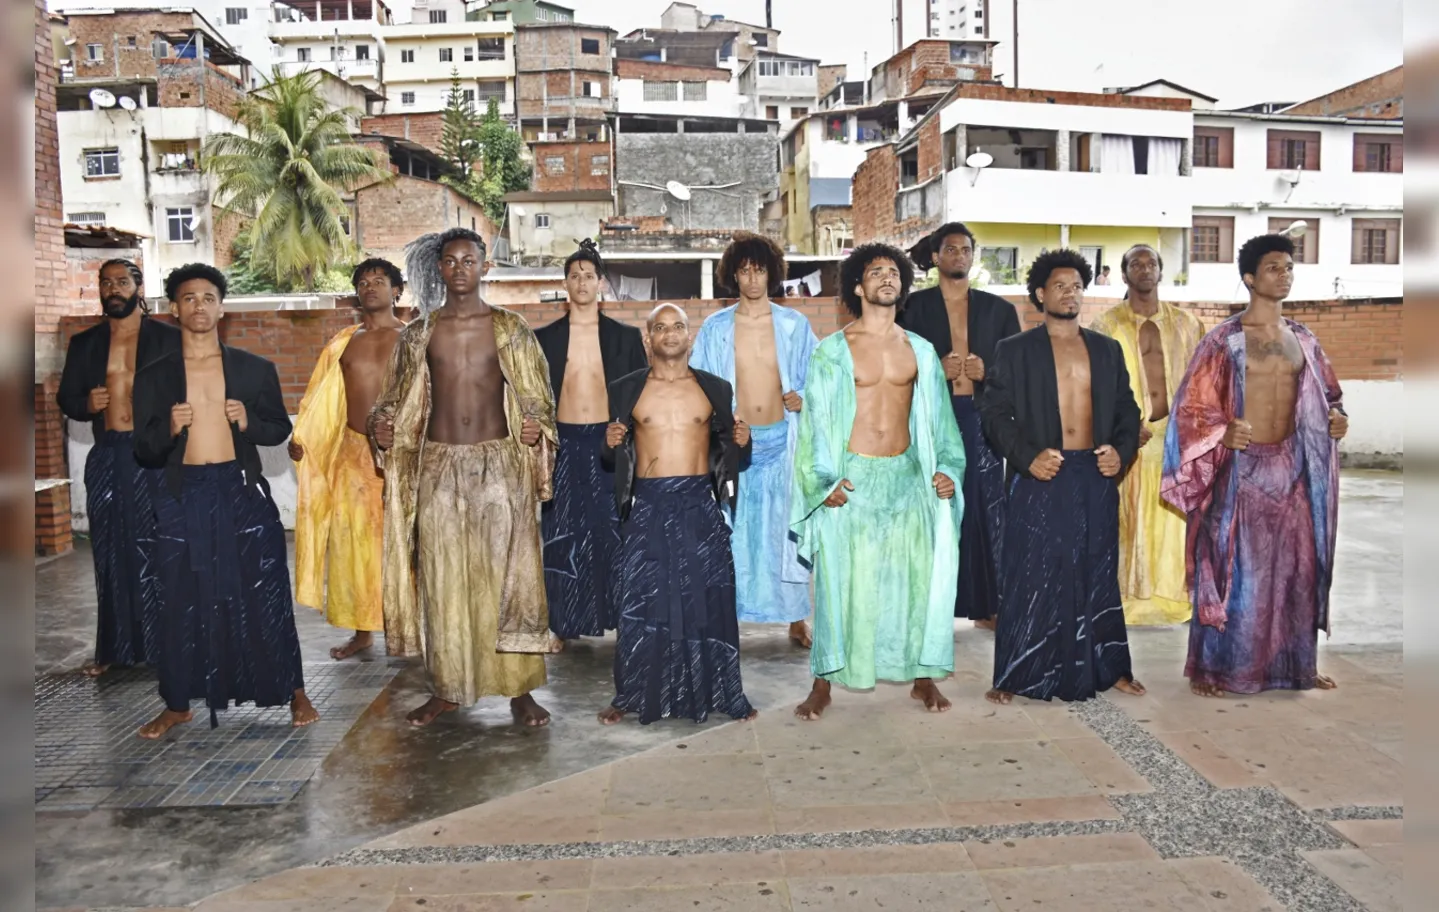 Elenco reúne 12 capoeiristas baianos e a bailarina Márcia Jaqueline